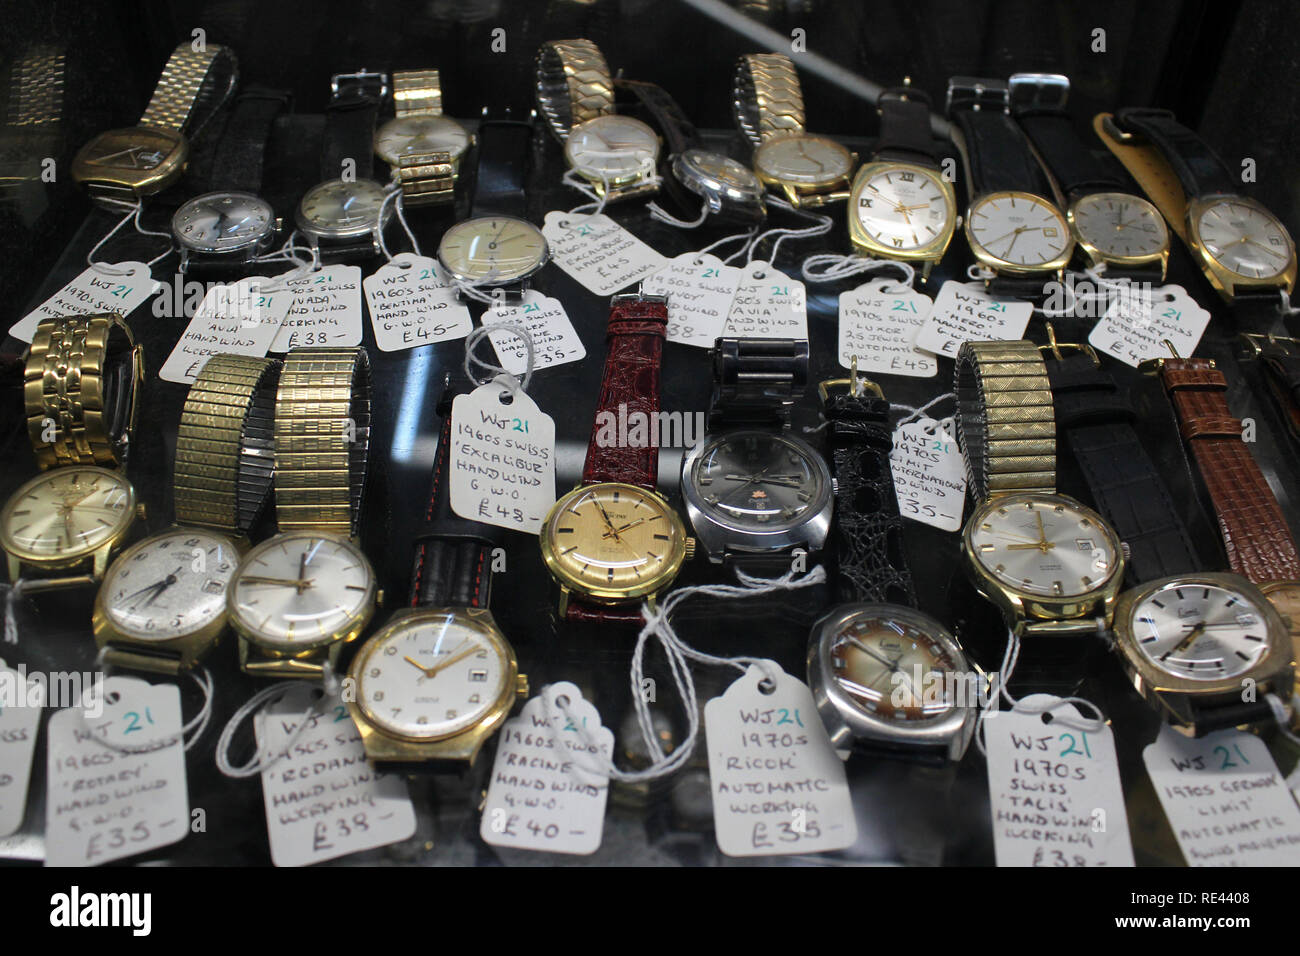 Vecchi orologi vintage con etichette del prezzo Foto Stock